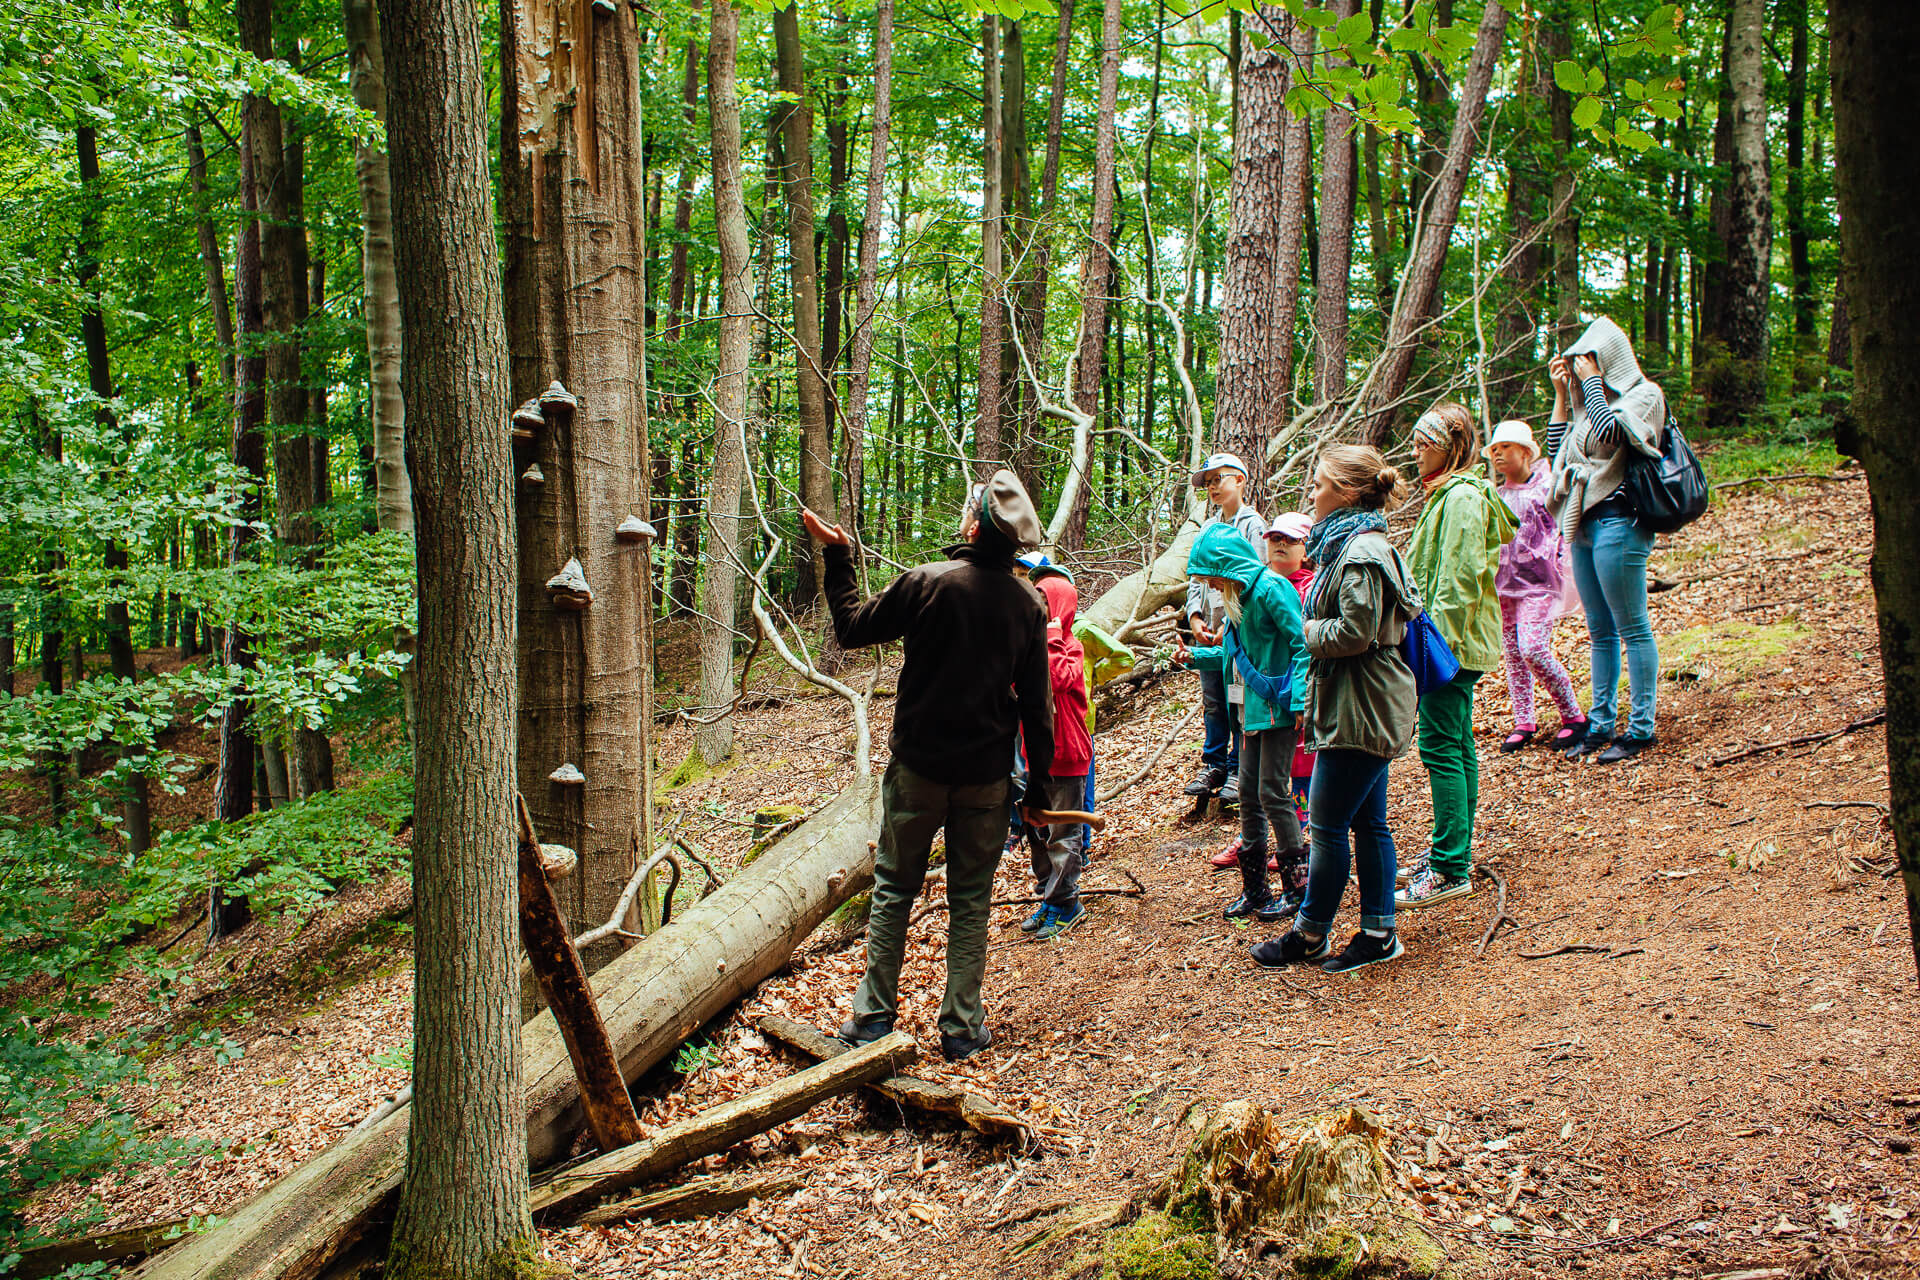 Marszewo sciezki przyrodnicze 5 - Pomorskie ścieżki przyrodnicze - spacer z edukacją dla dzieci i dorosłych